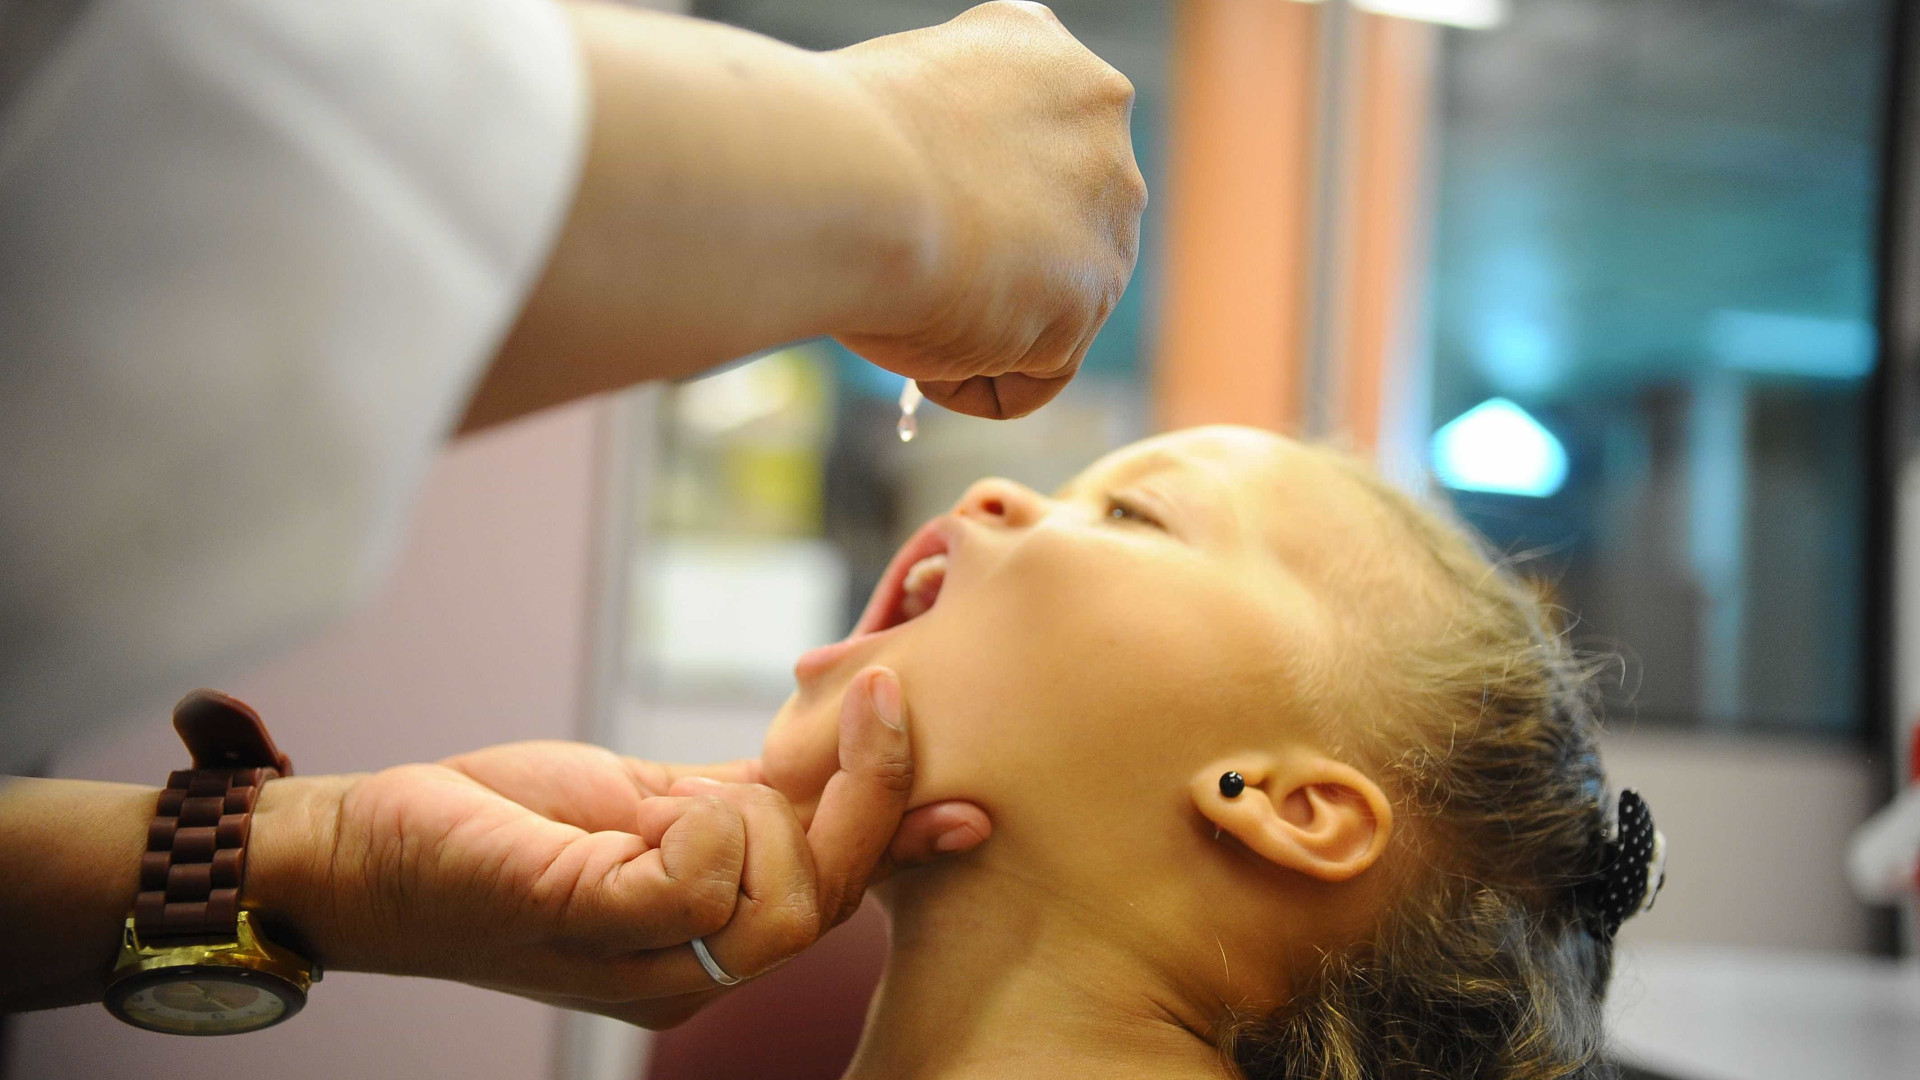 Vacinação contra pólio e sarampo atinge 51% da meta